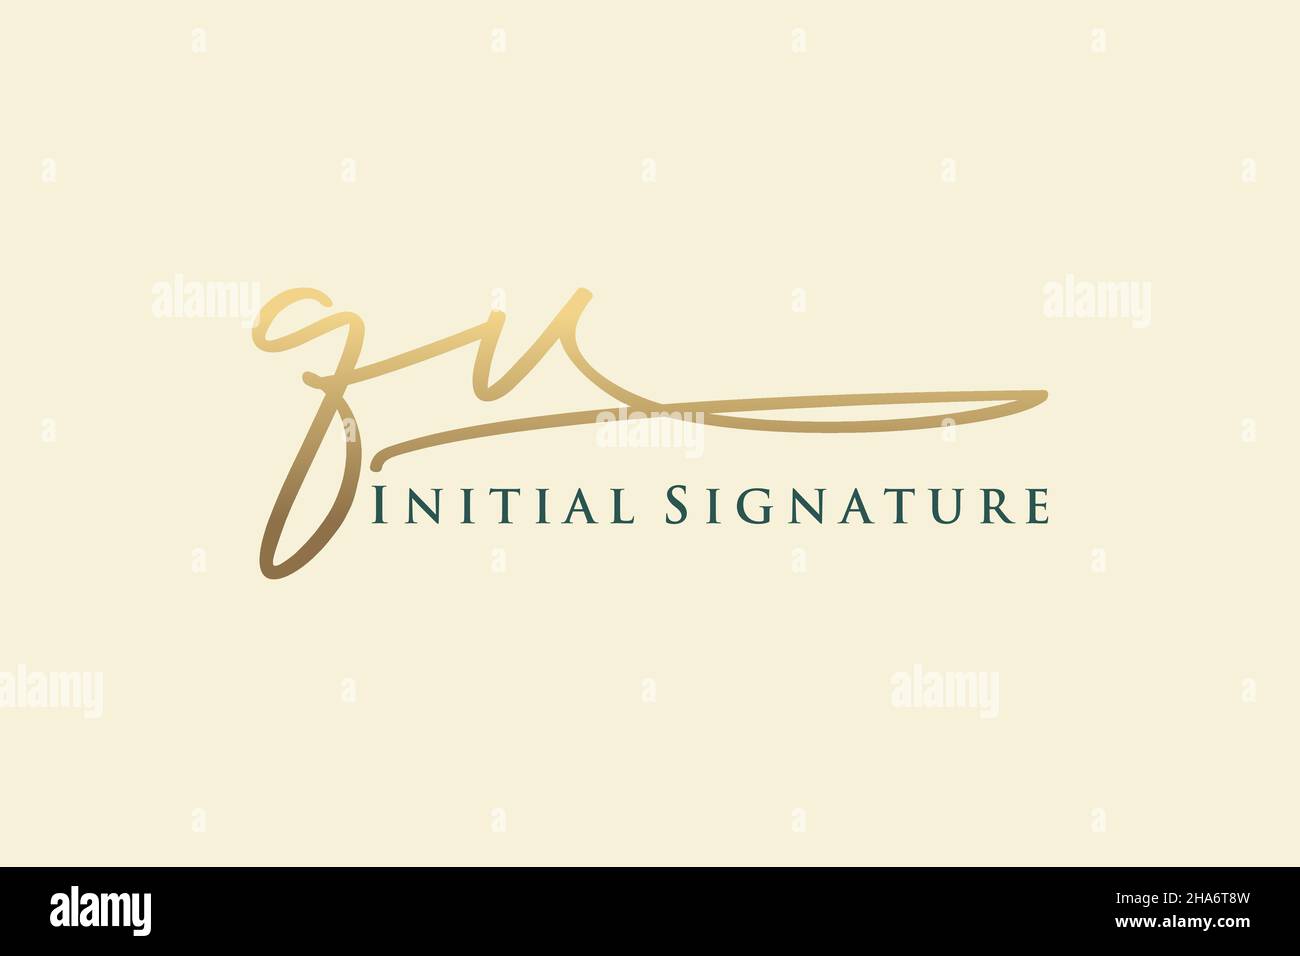 QV Letter Signature Logo Template Logotipo de diseño elegante. Letras de caligrafía dibujadas a mano Ilustración vectorial. Ilustración del Vector